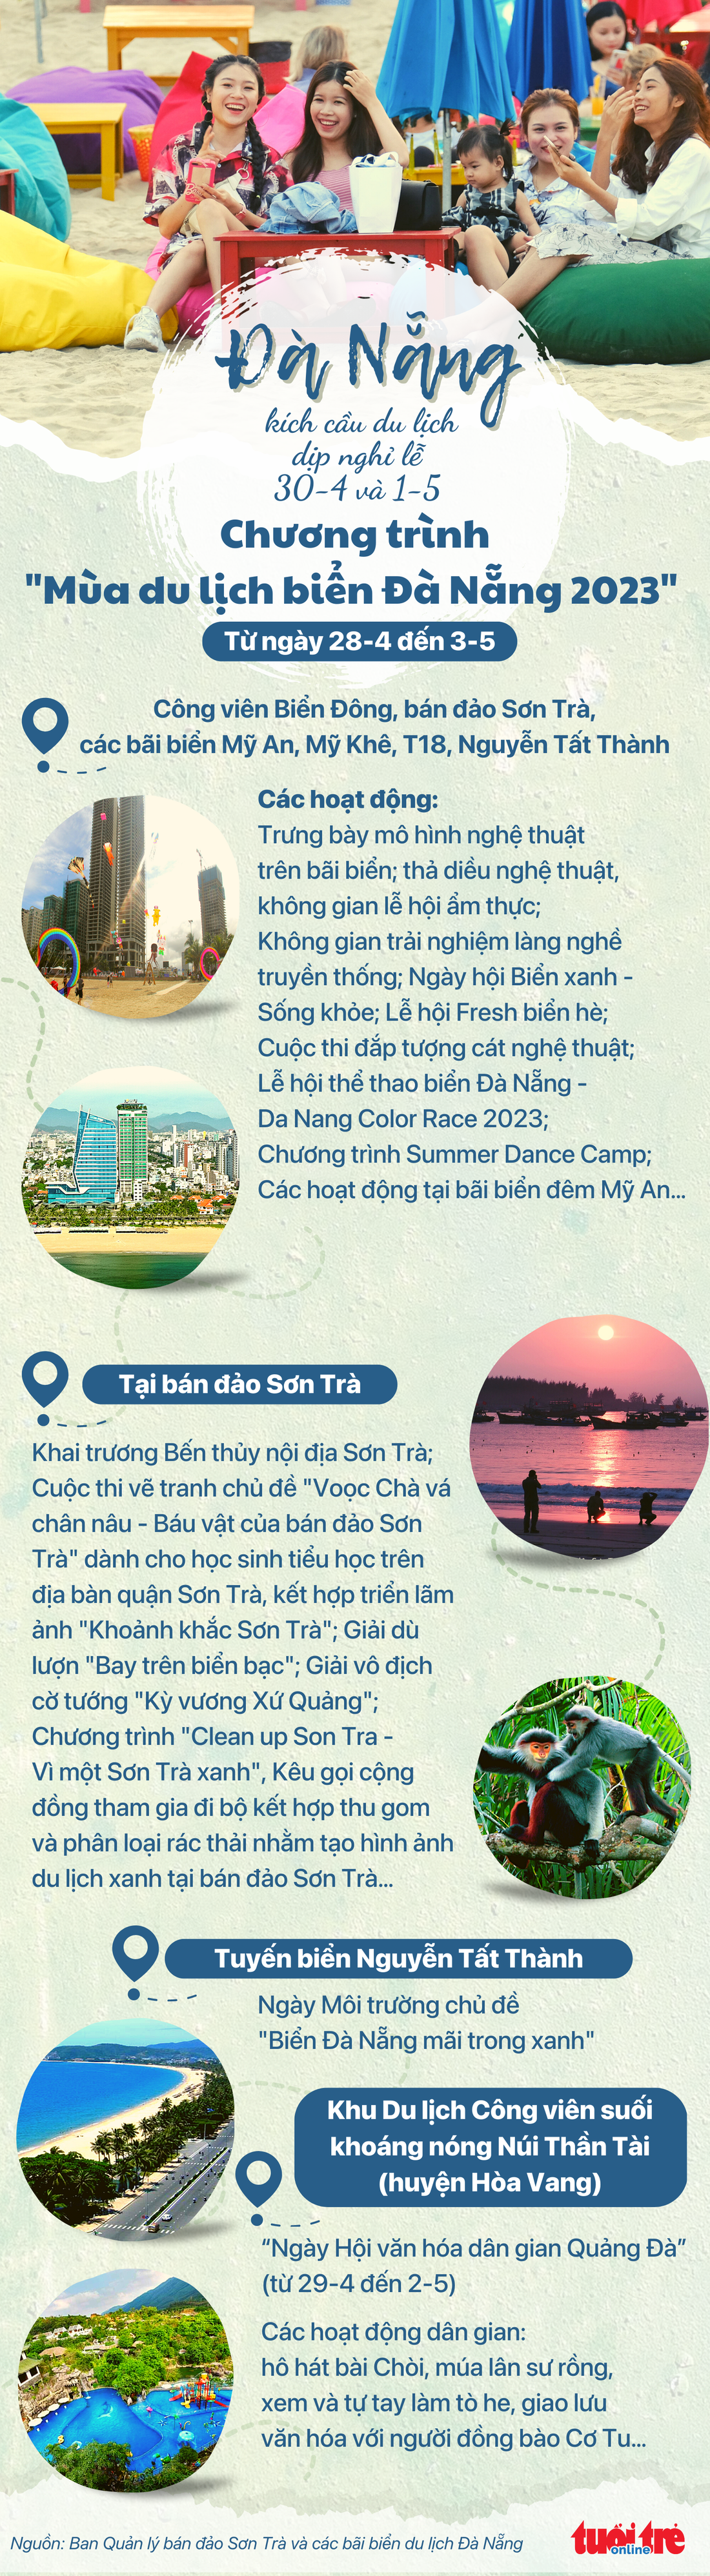 Infographic: Du lịch biển dịp lễ 30-4 và 1-5 ở Đà Nẵng có gì? - Ảnh 1.